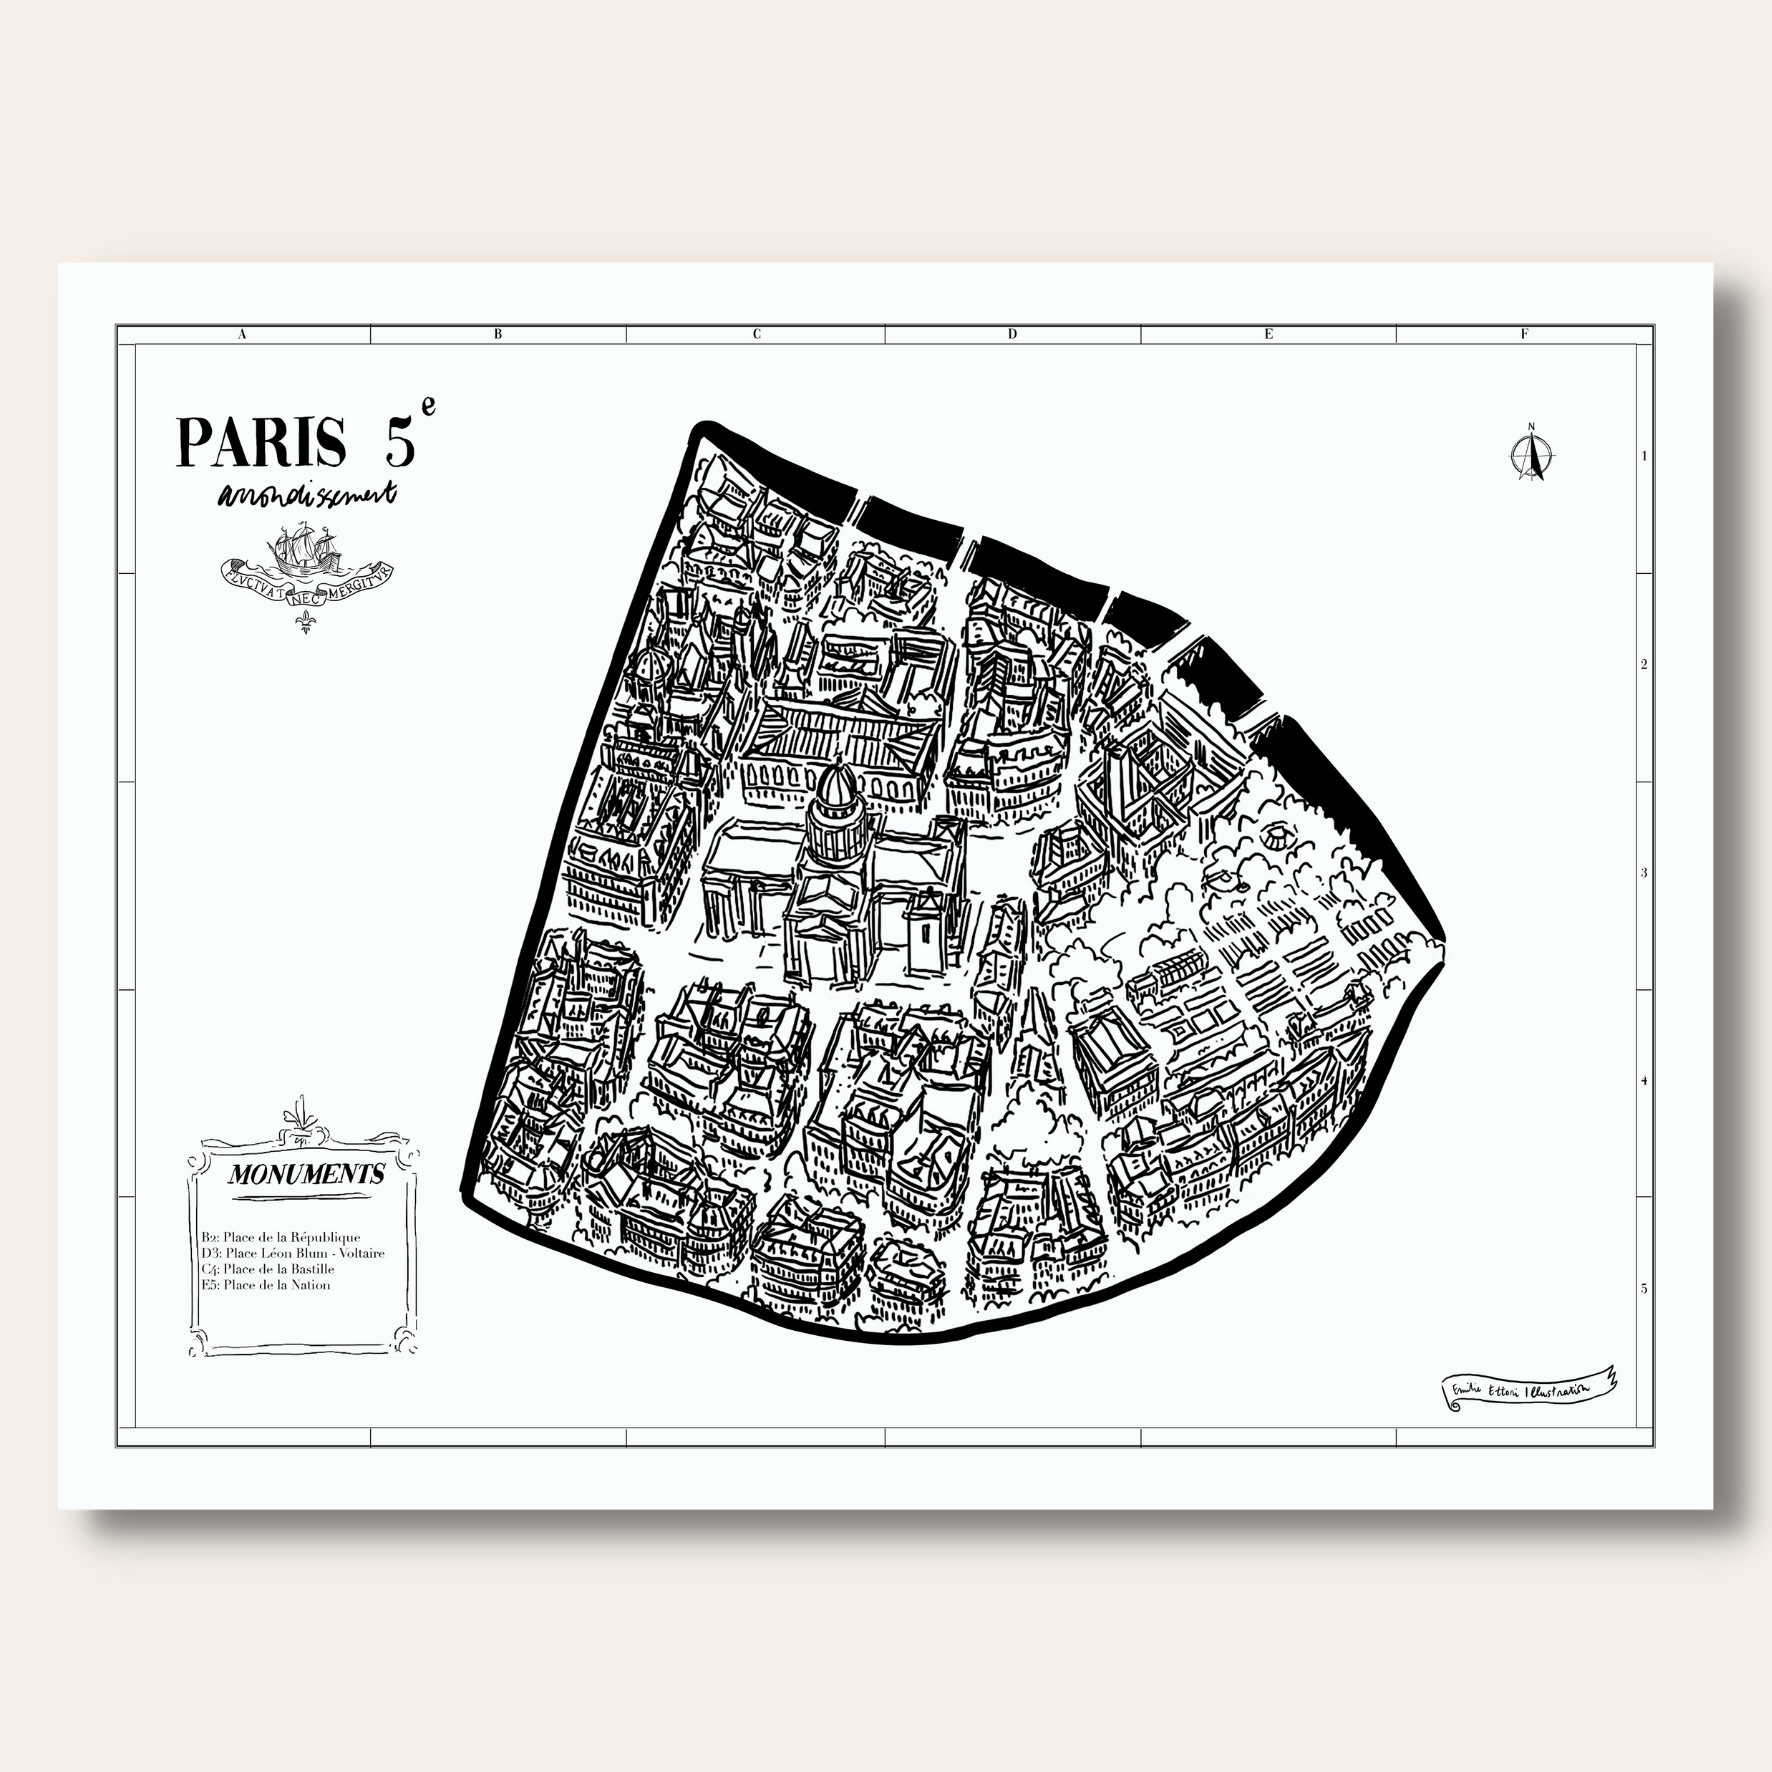 Arrondissements de Paris